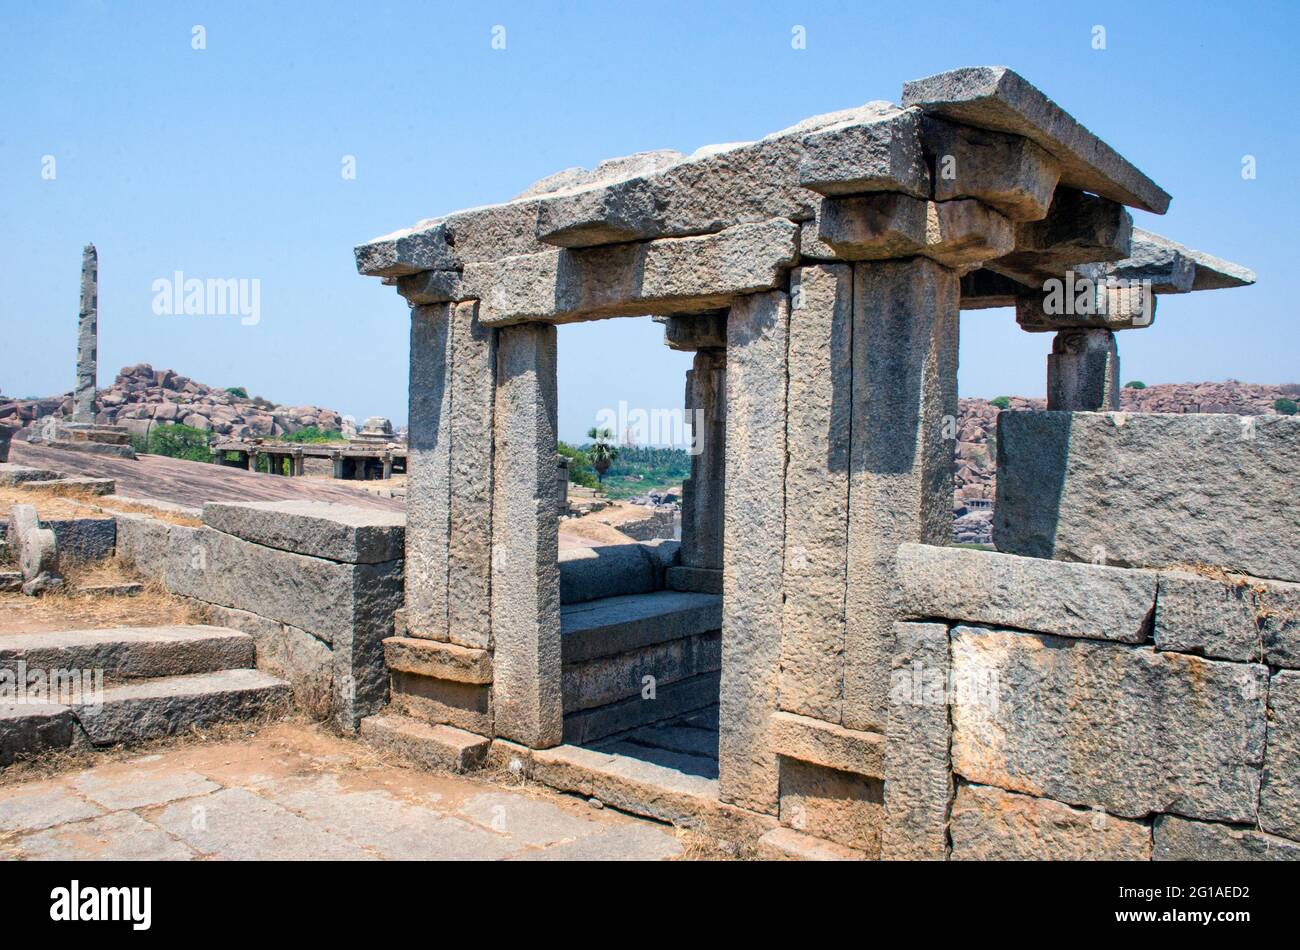 ancient architecture at ruined city hampi karnataka india Stock Photo